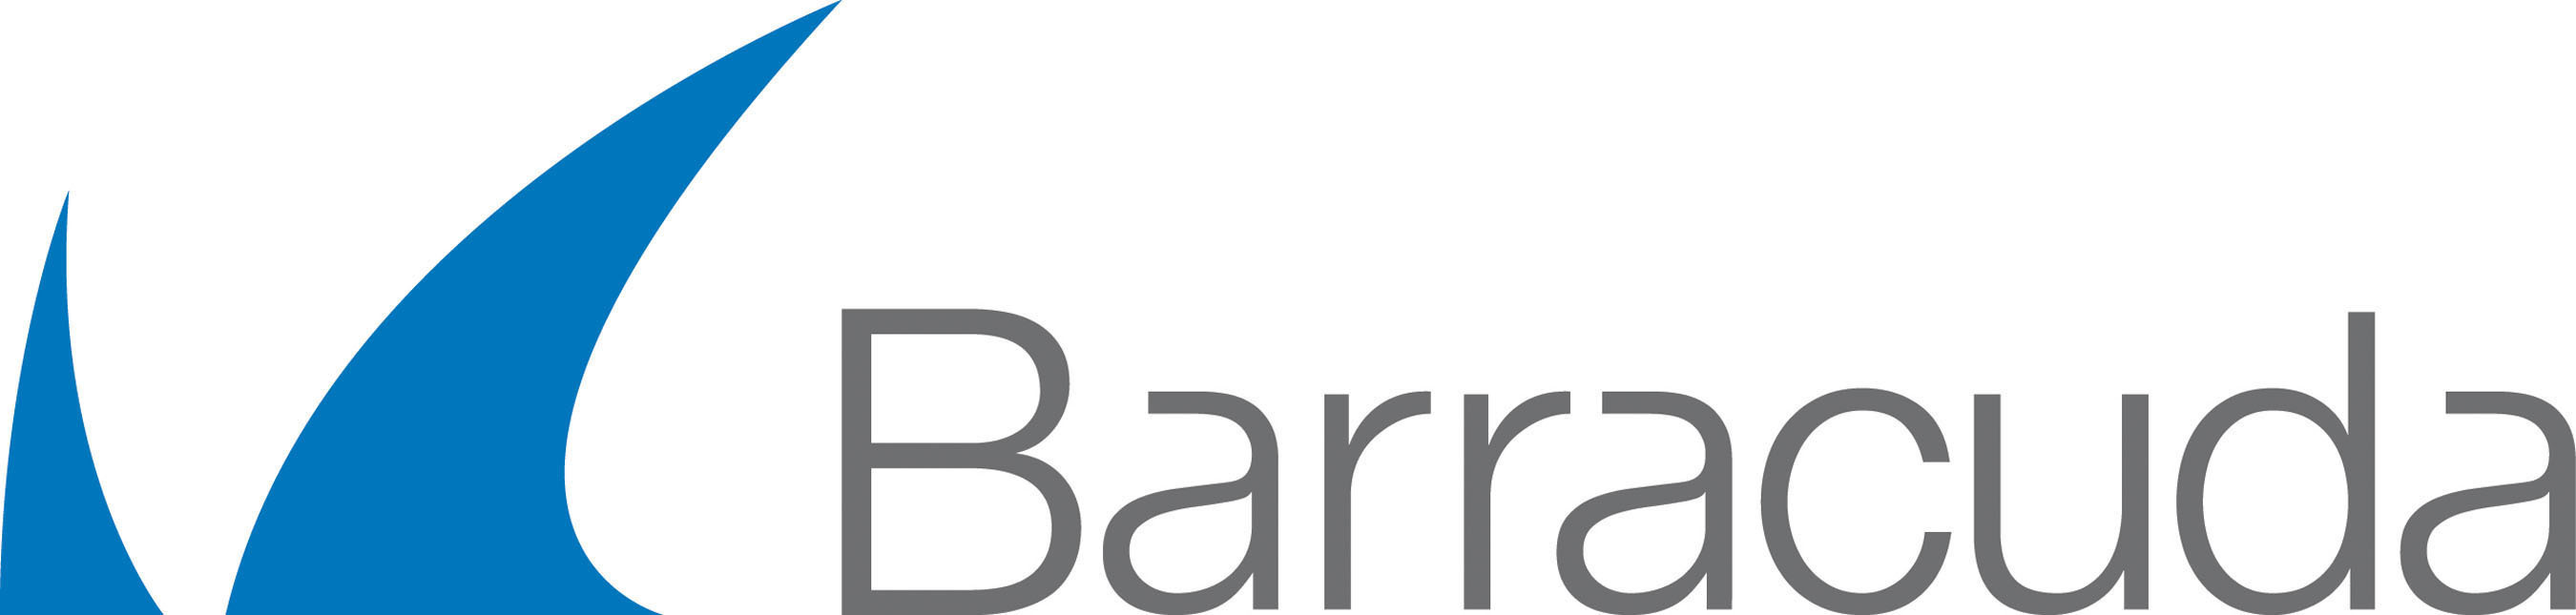 Barracuda Logo.